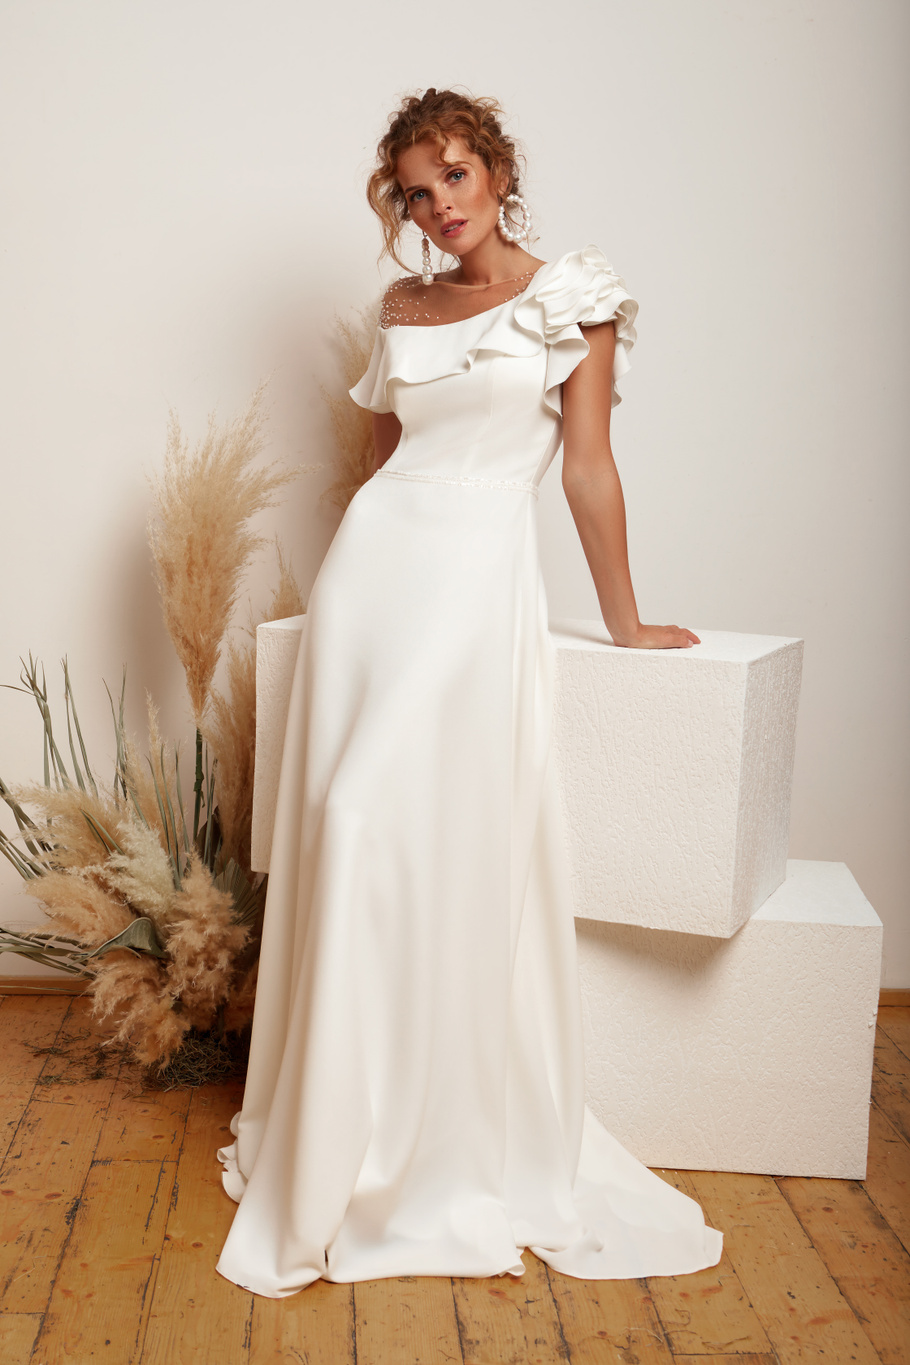 Купить свадебное платье «Астра» Мэрри Марк из коллекции 2020 года в Воронеже